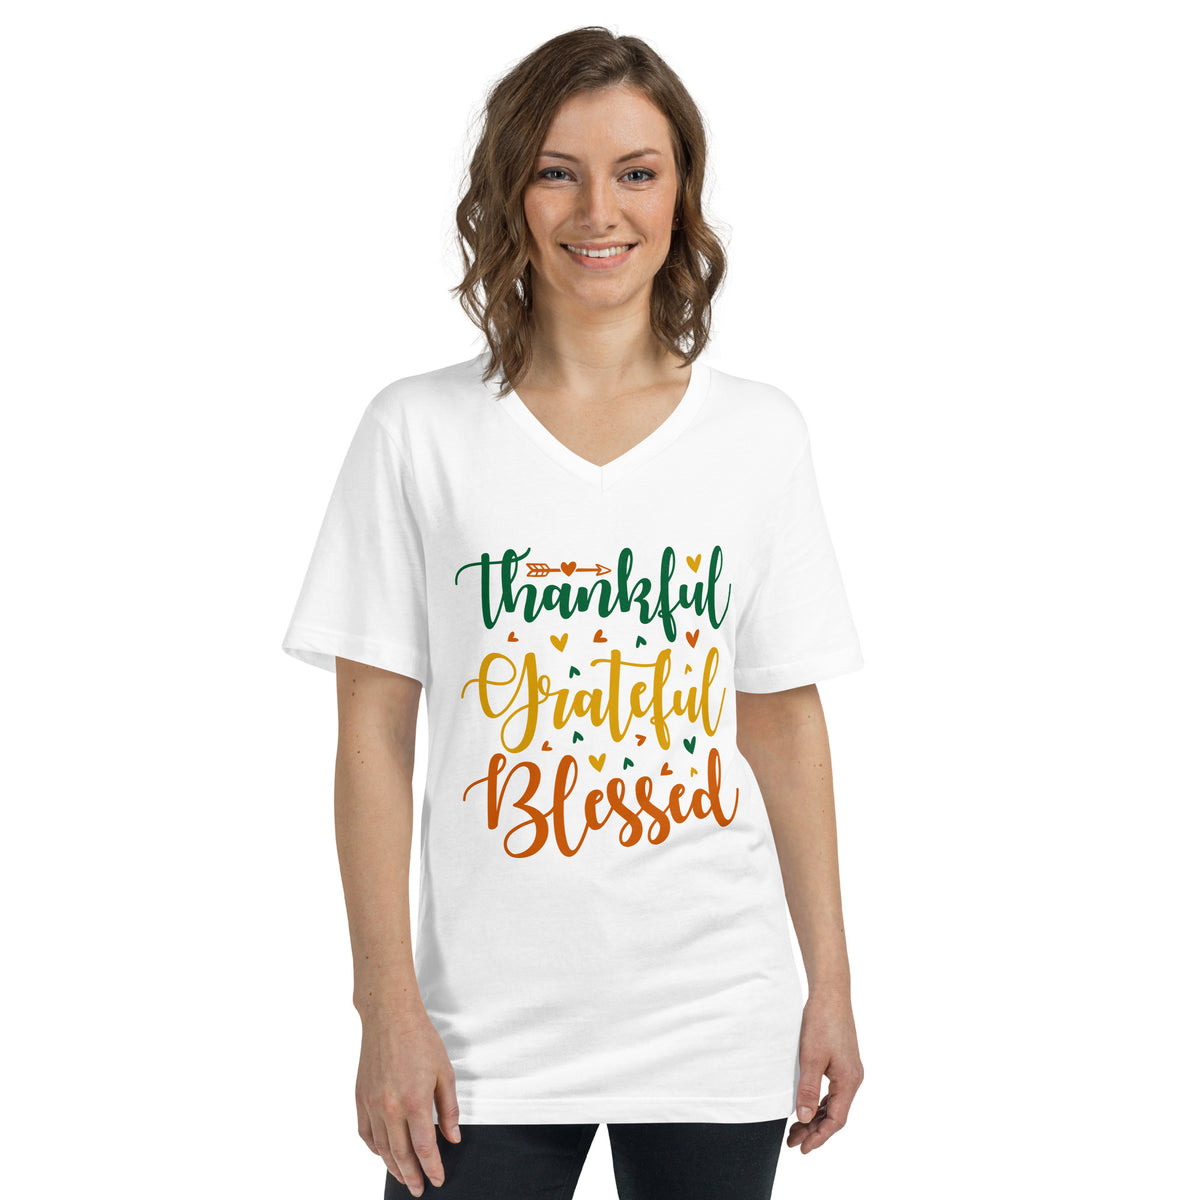 Thankful, Grateful, Blessed - Women's V-Neck T-Shirt